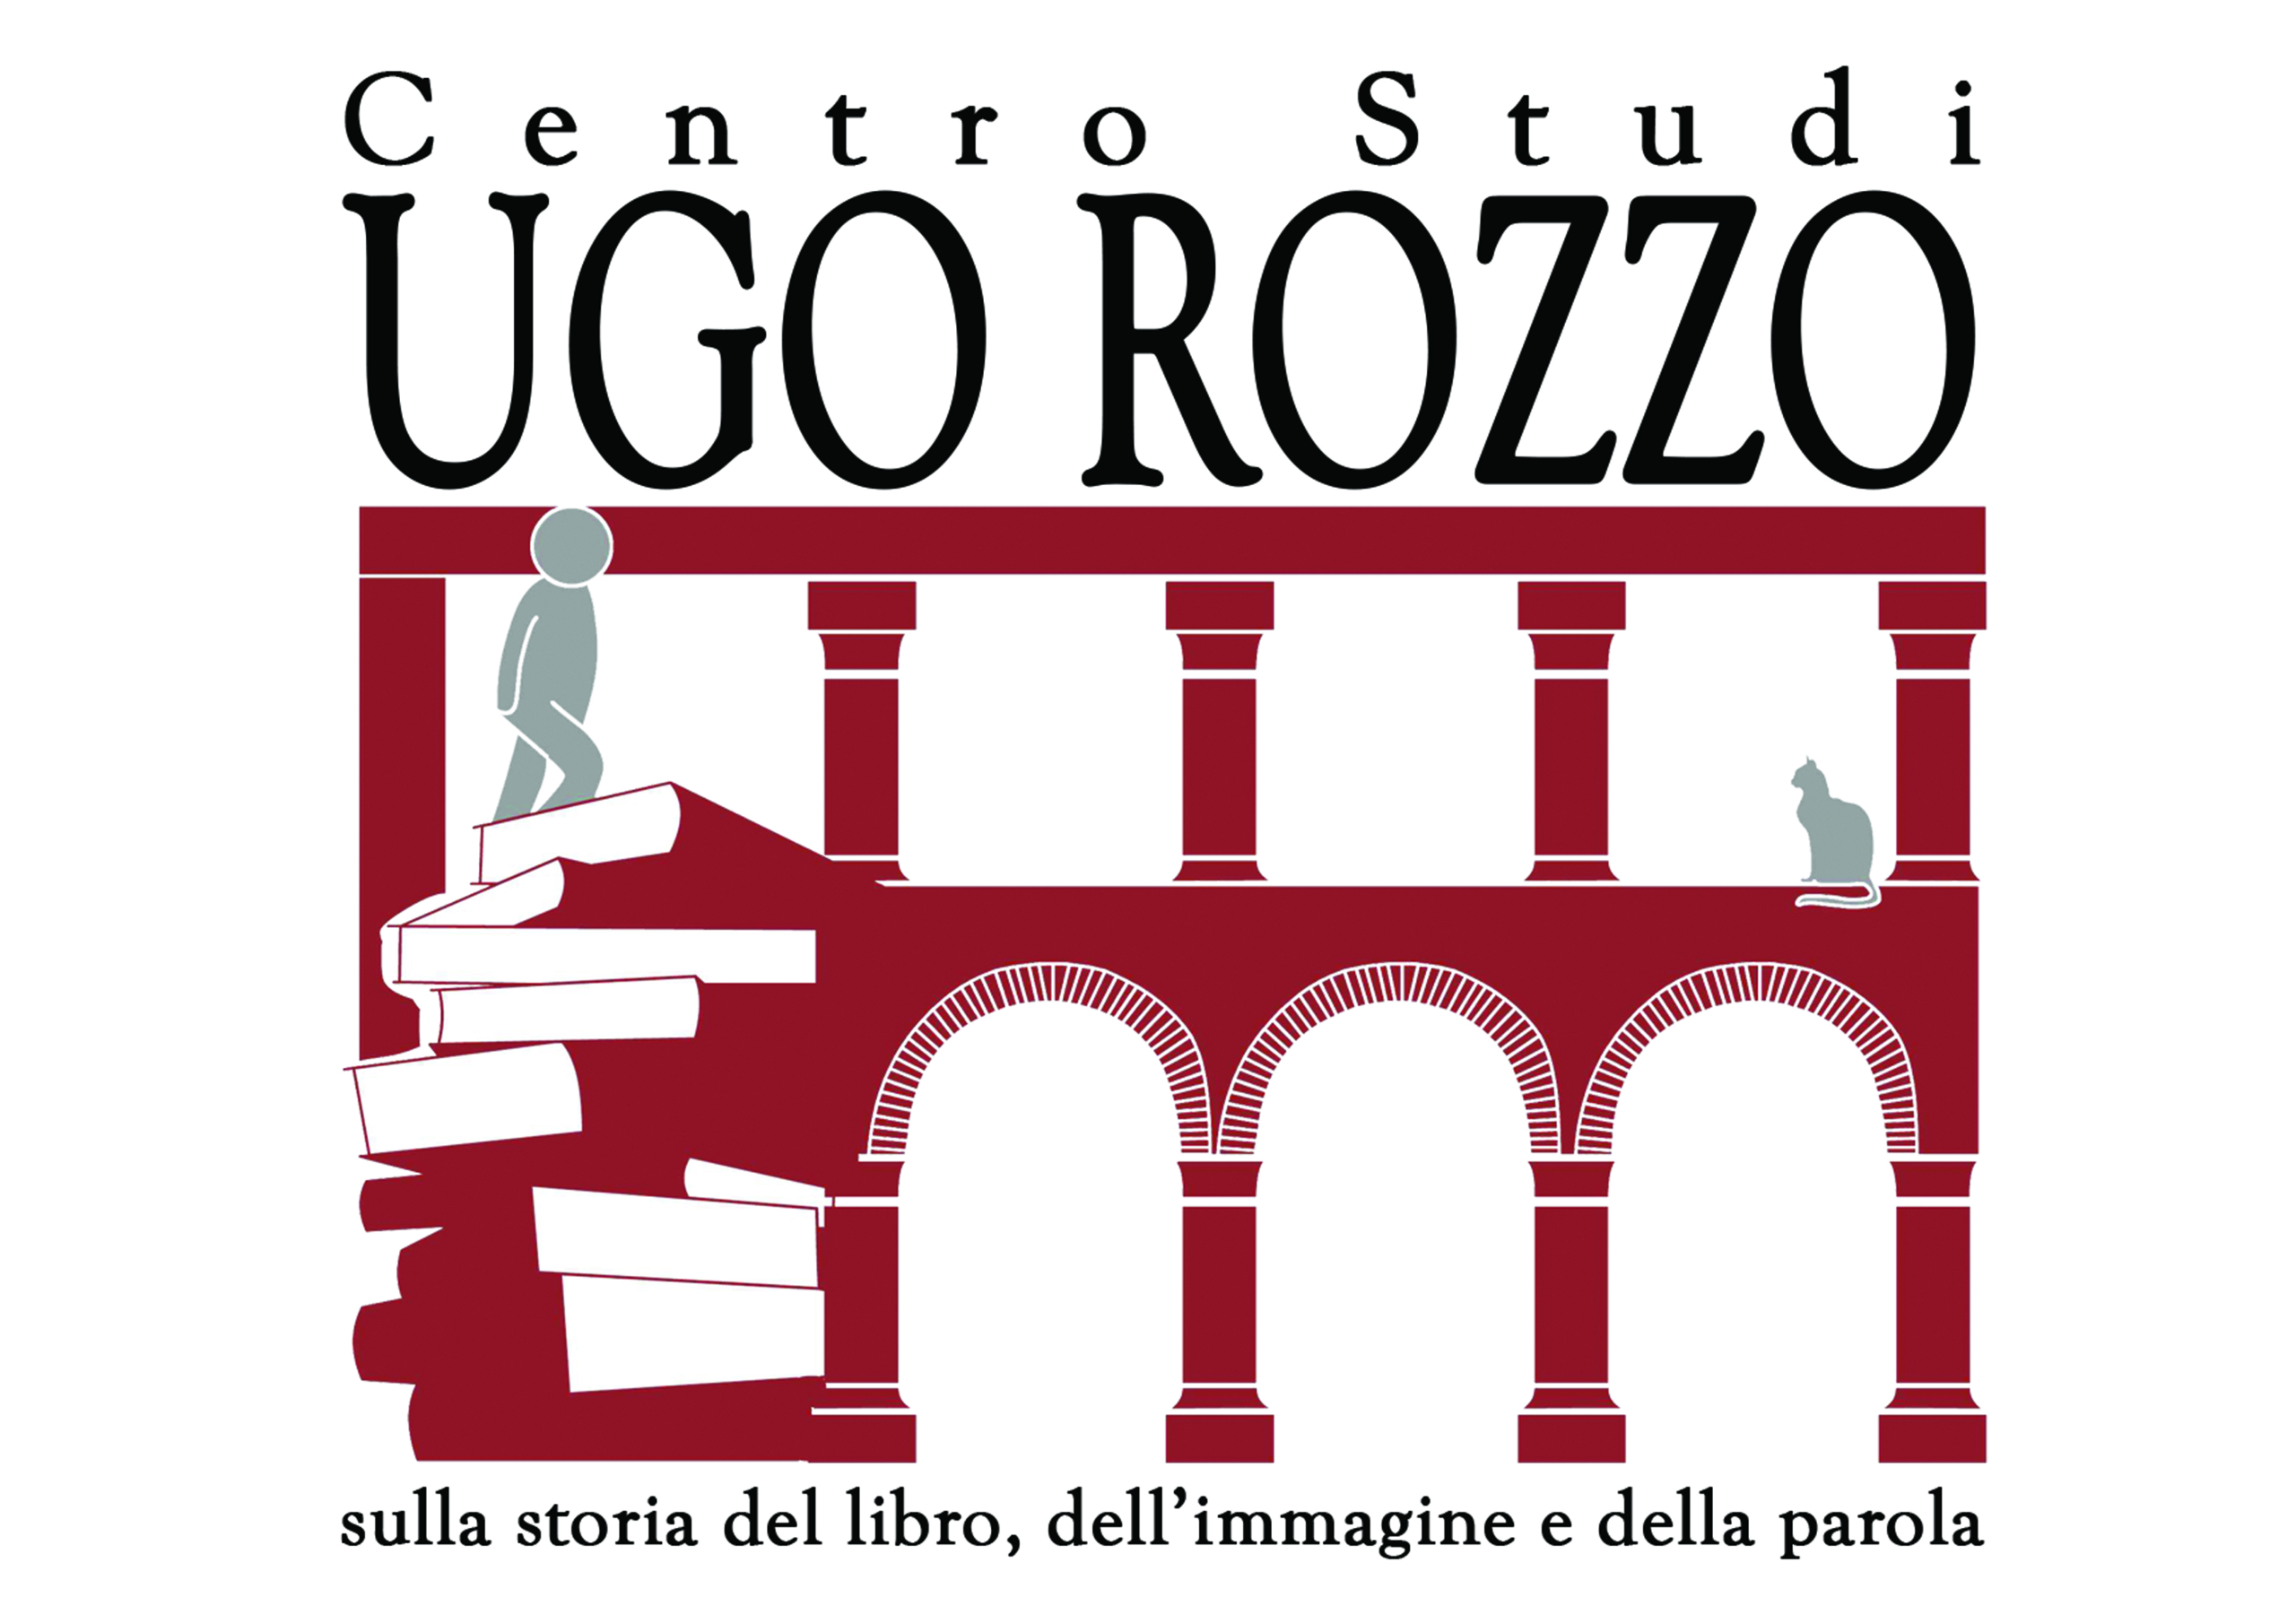 Il Centro Studi “Ugo Rozzo”